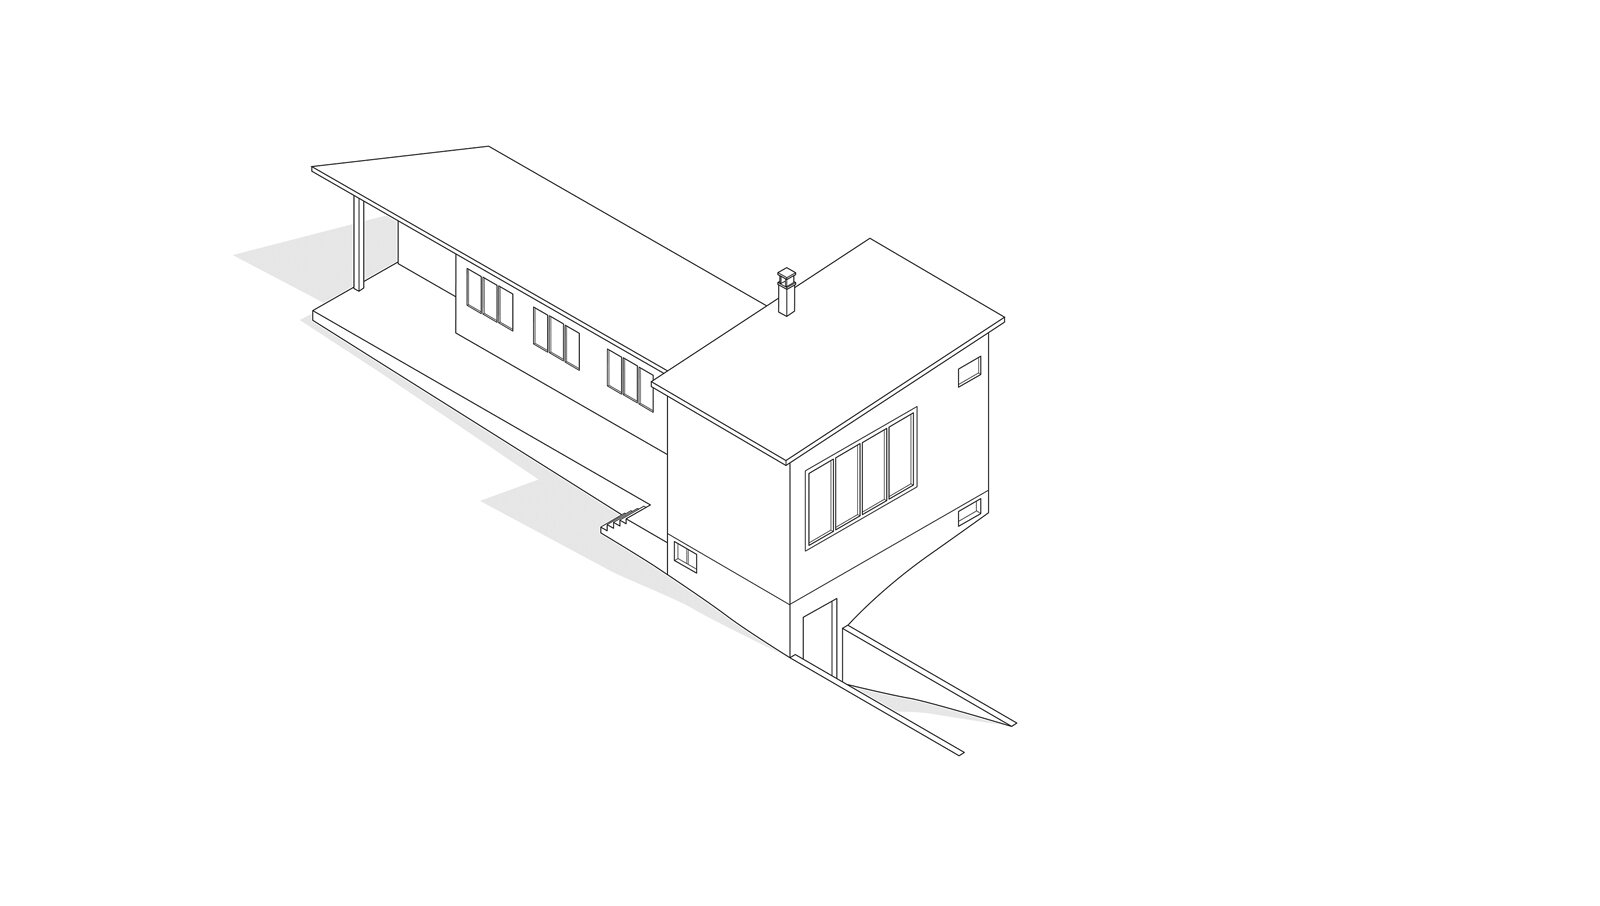 oculus-illustration-architektur-ausstellung-zeichnung-isometrie-wohnen-atelierhaus-wenk